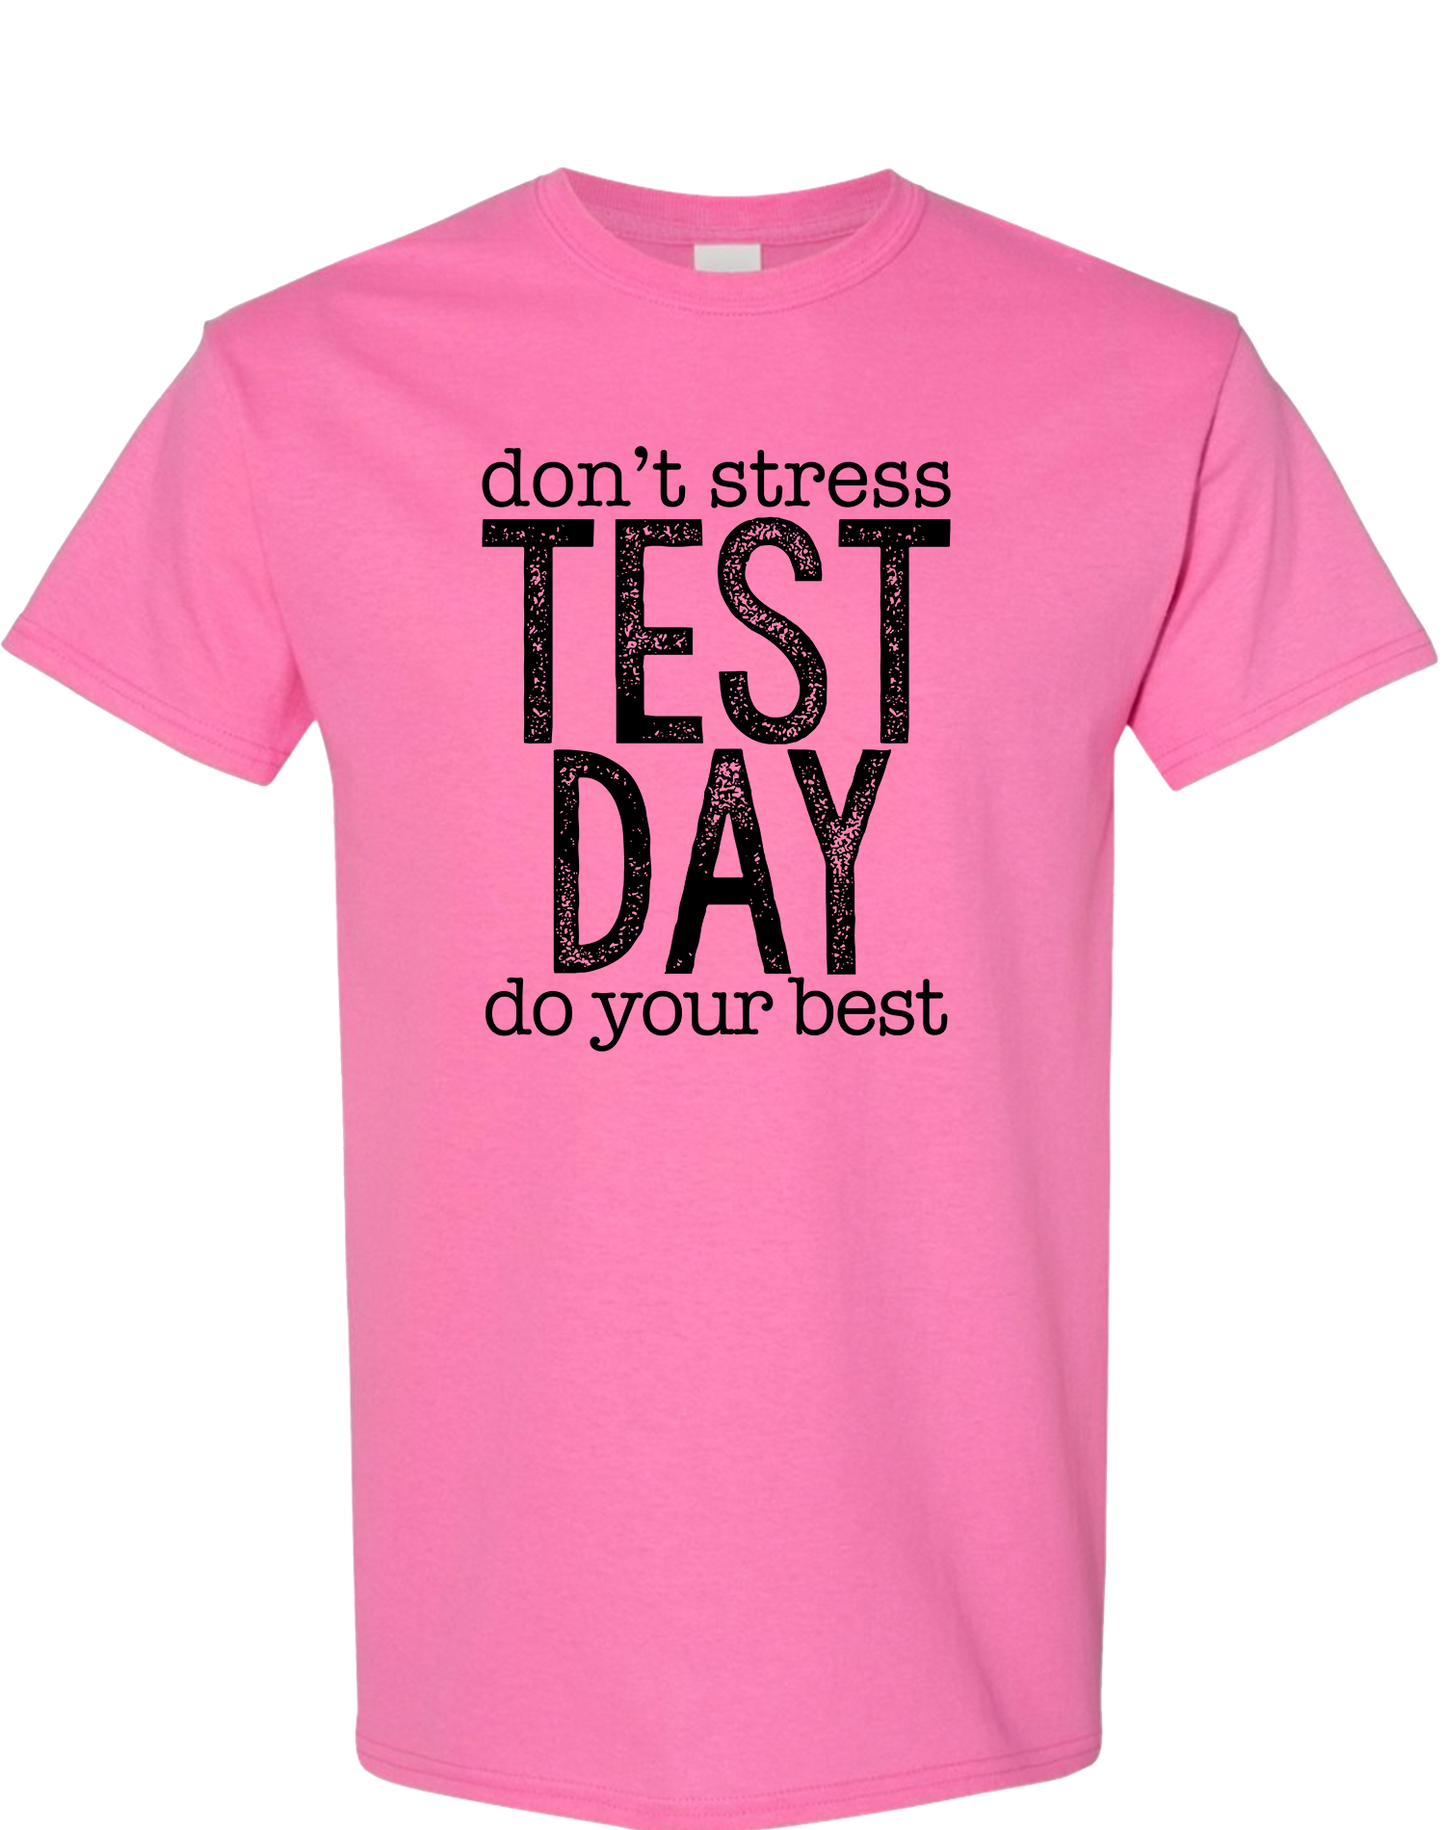 Test Day